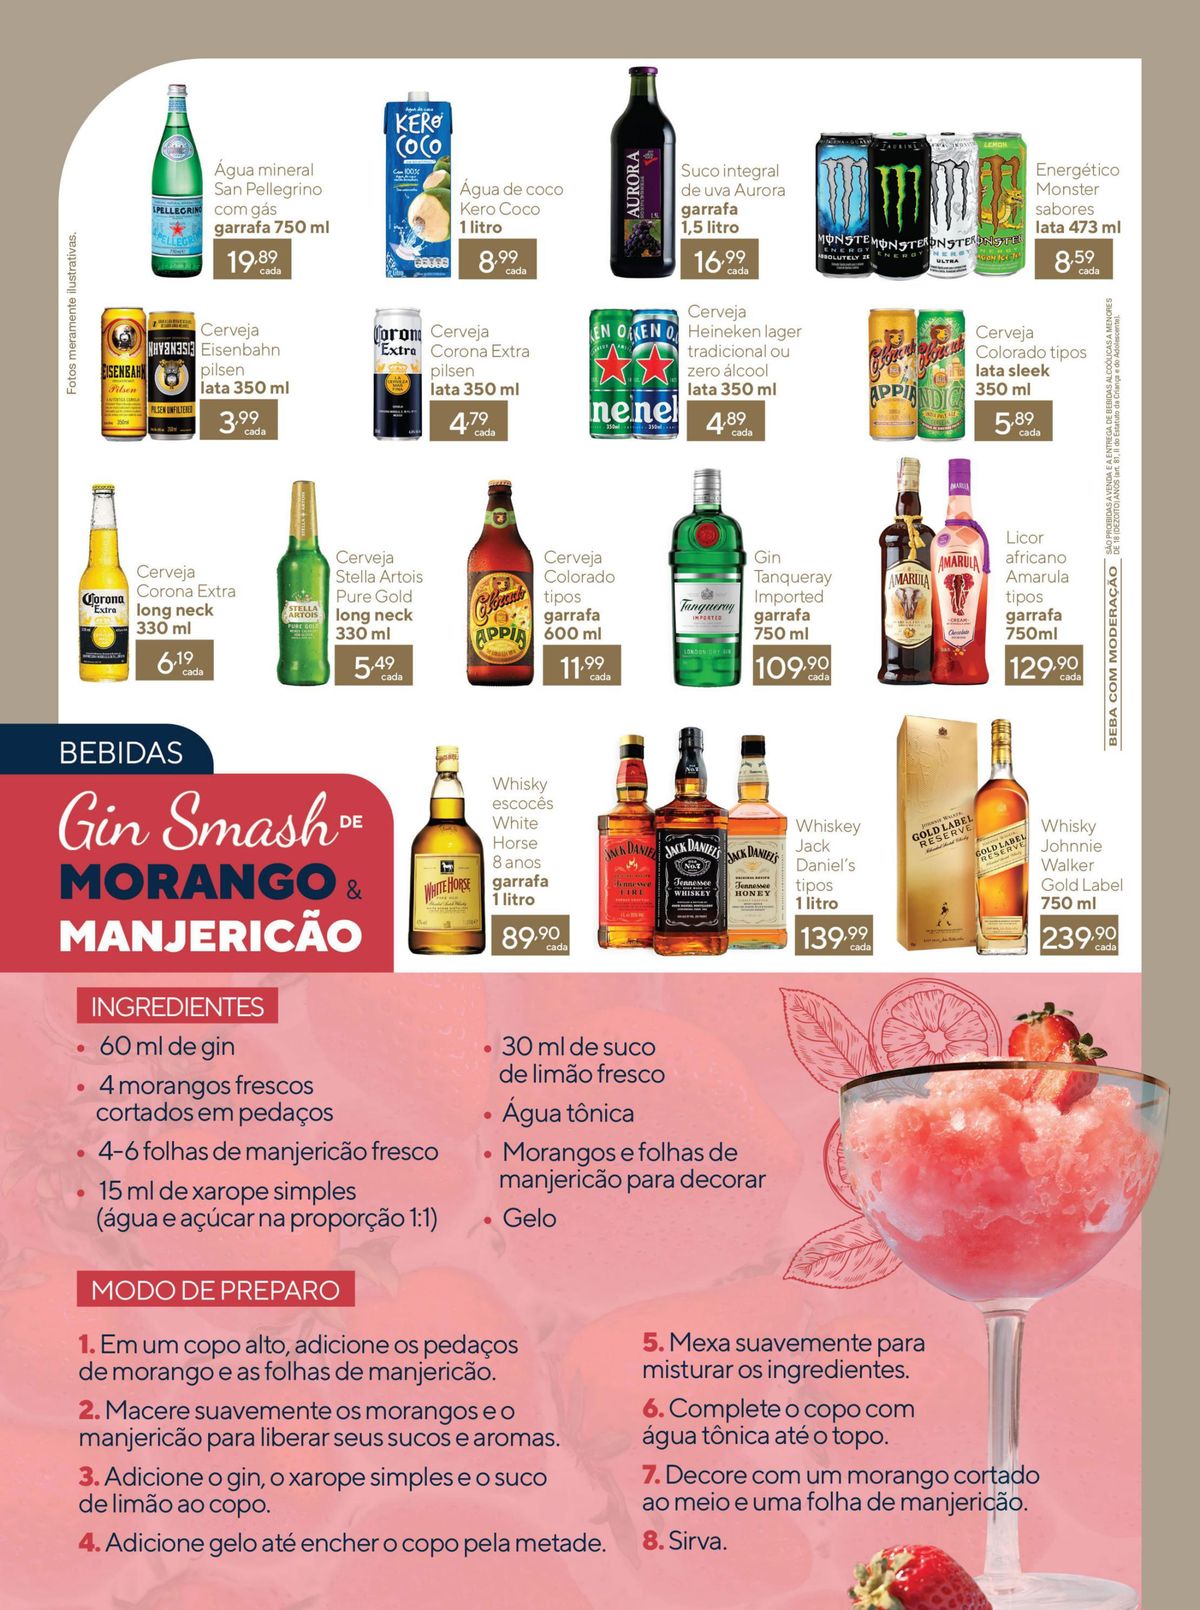 Ofertas de bebidas alcoólicas no catálogo de supermercados